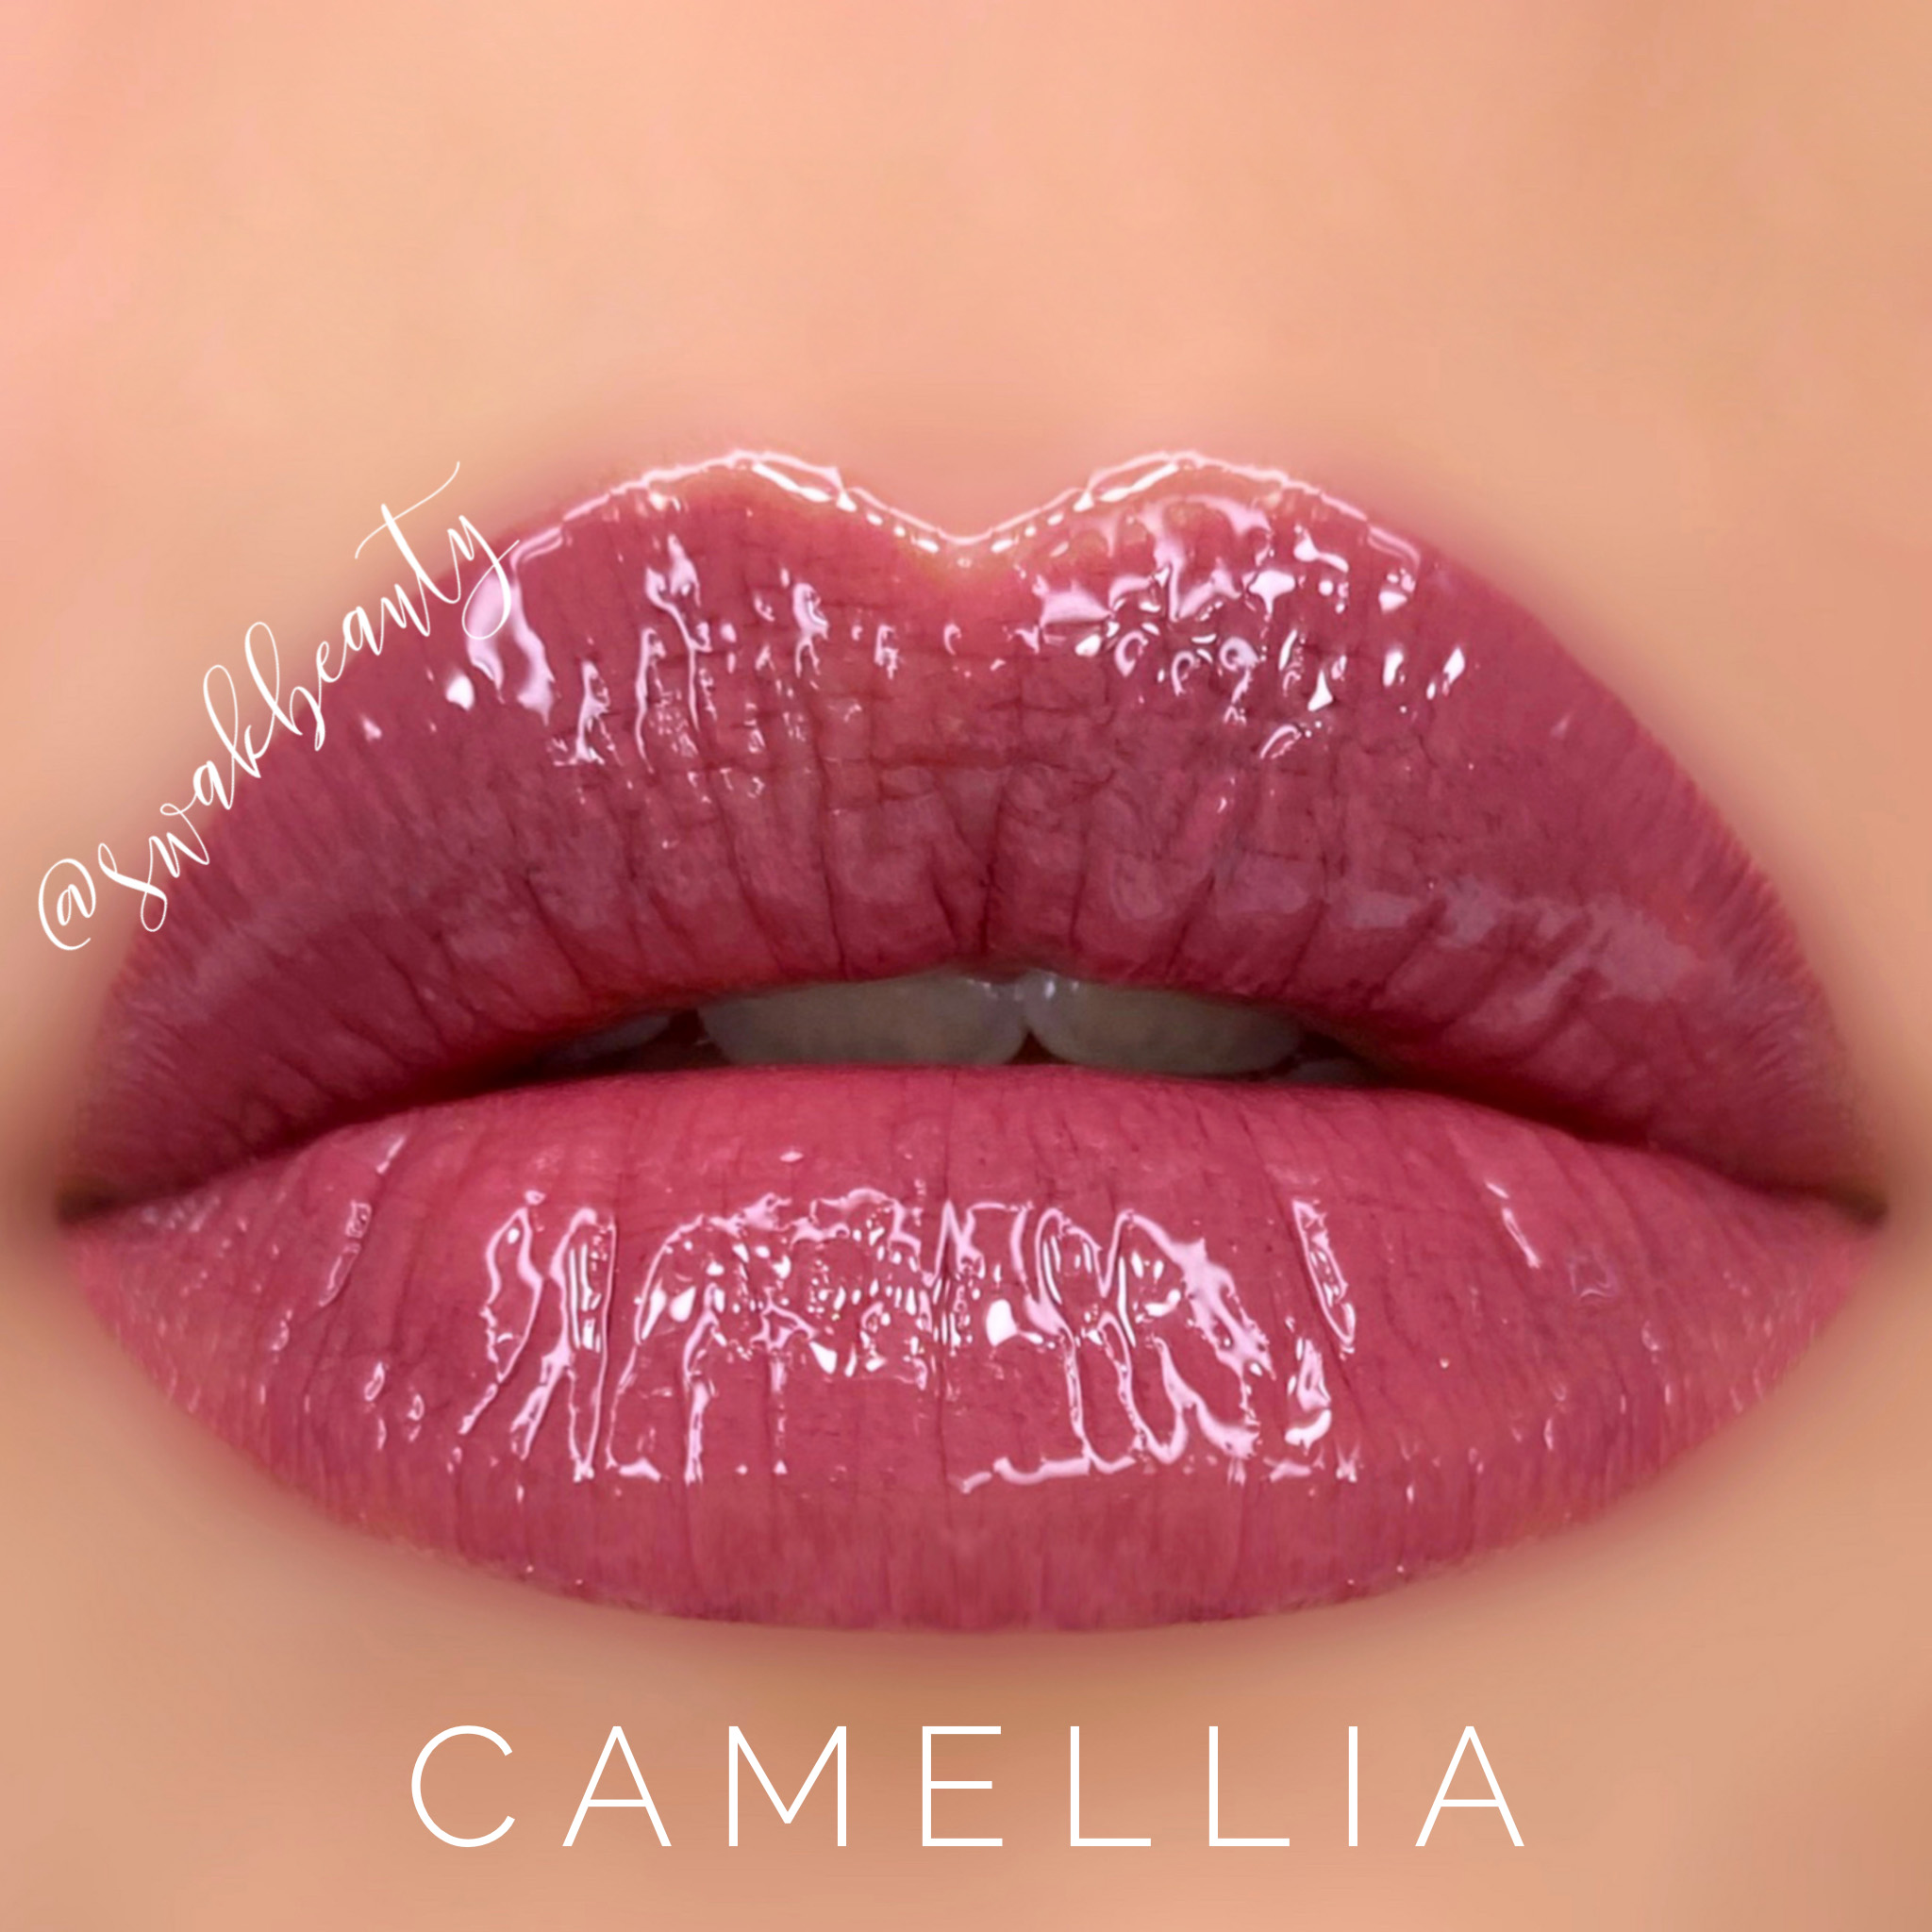 Camellia-lips